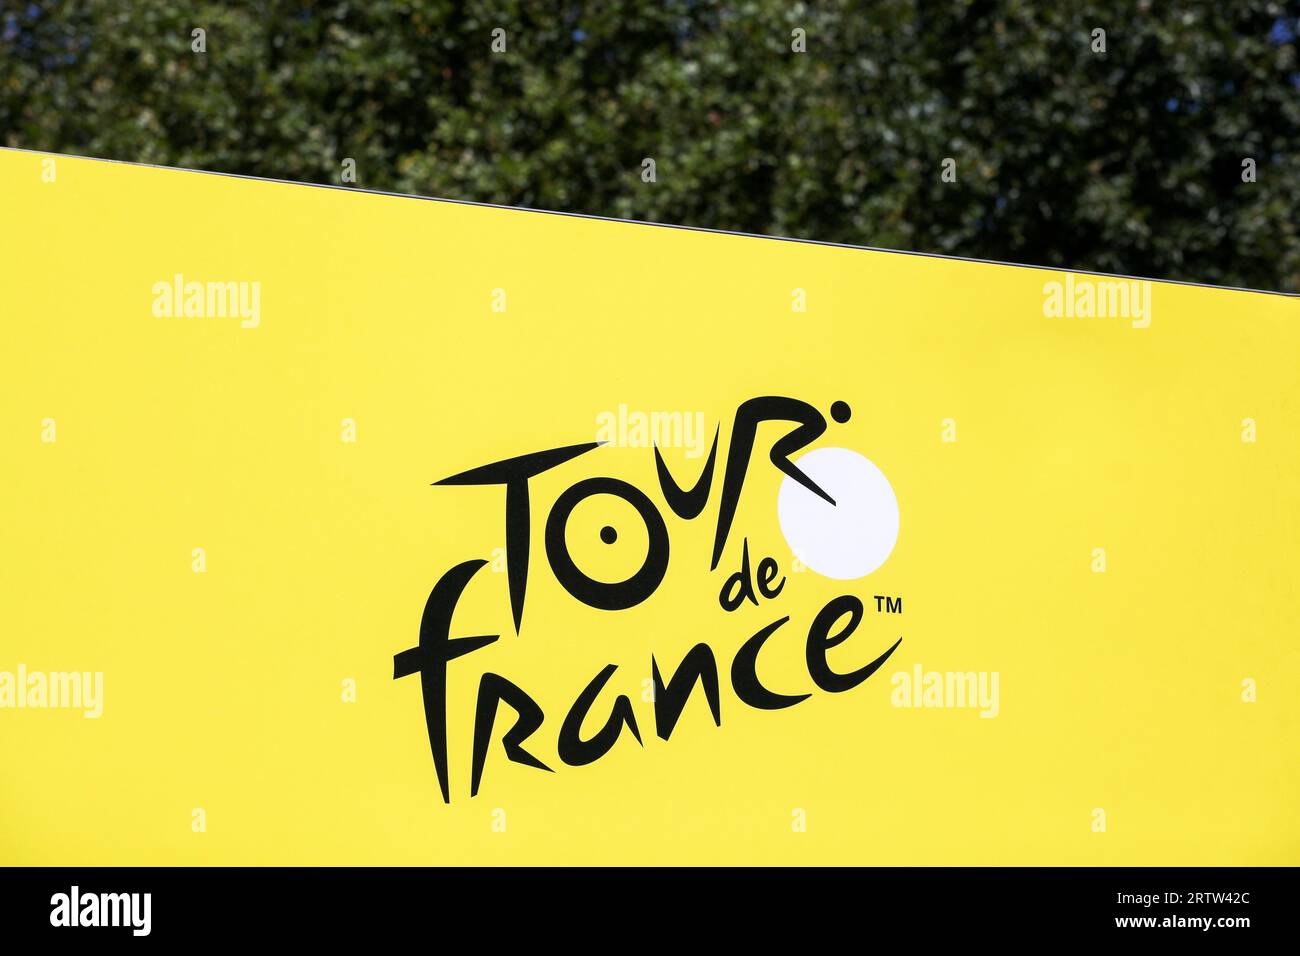 Logo der Tour de France Radtour an einer Wand. Die Tour de France ist ein jährlich stattfindendes mehrstufiges Radrennen, das hauptsächlich in Frankreich stattfindet Stockfoto